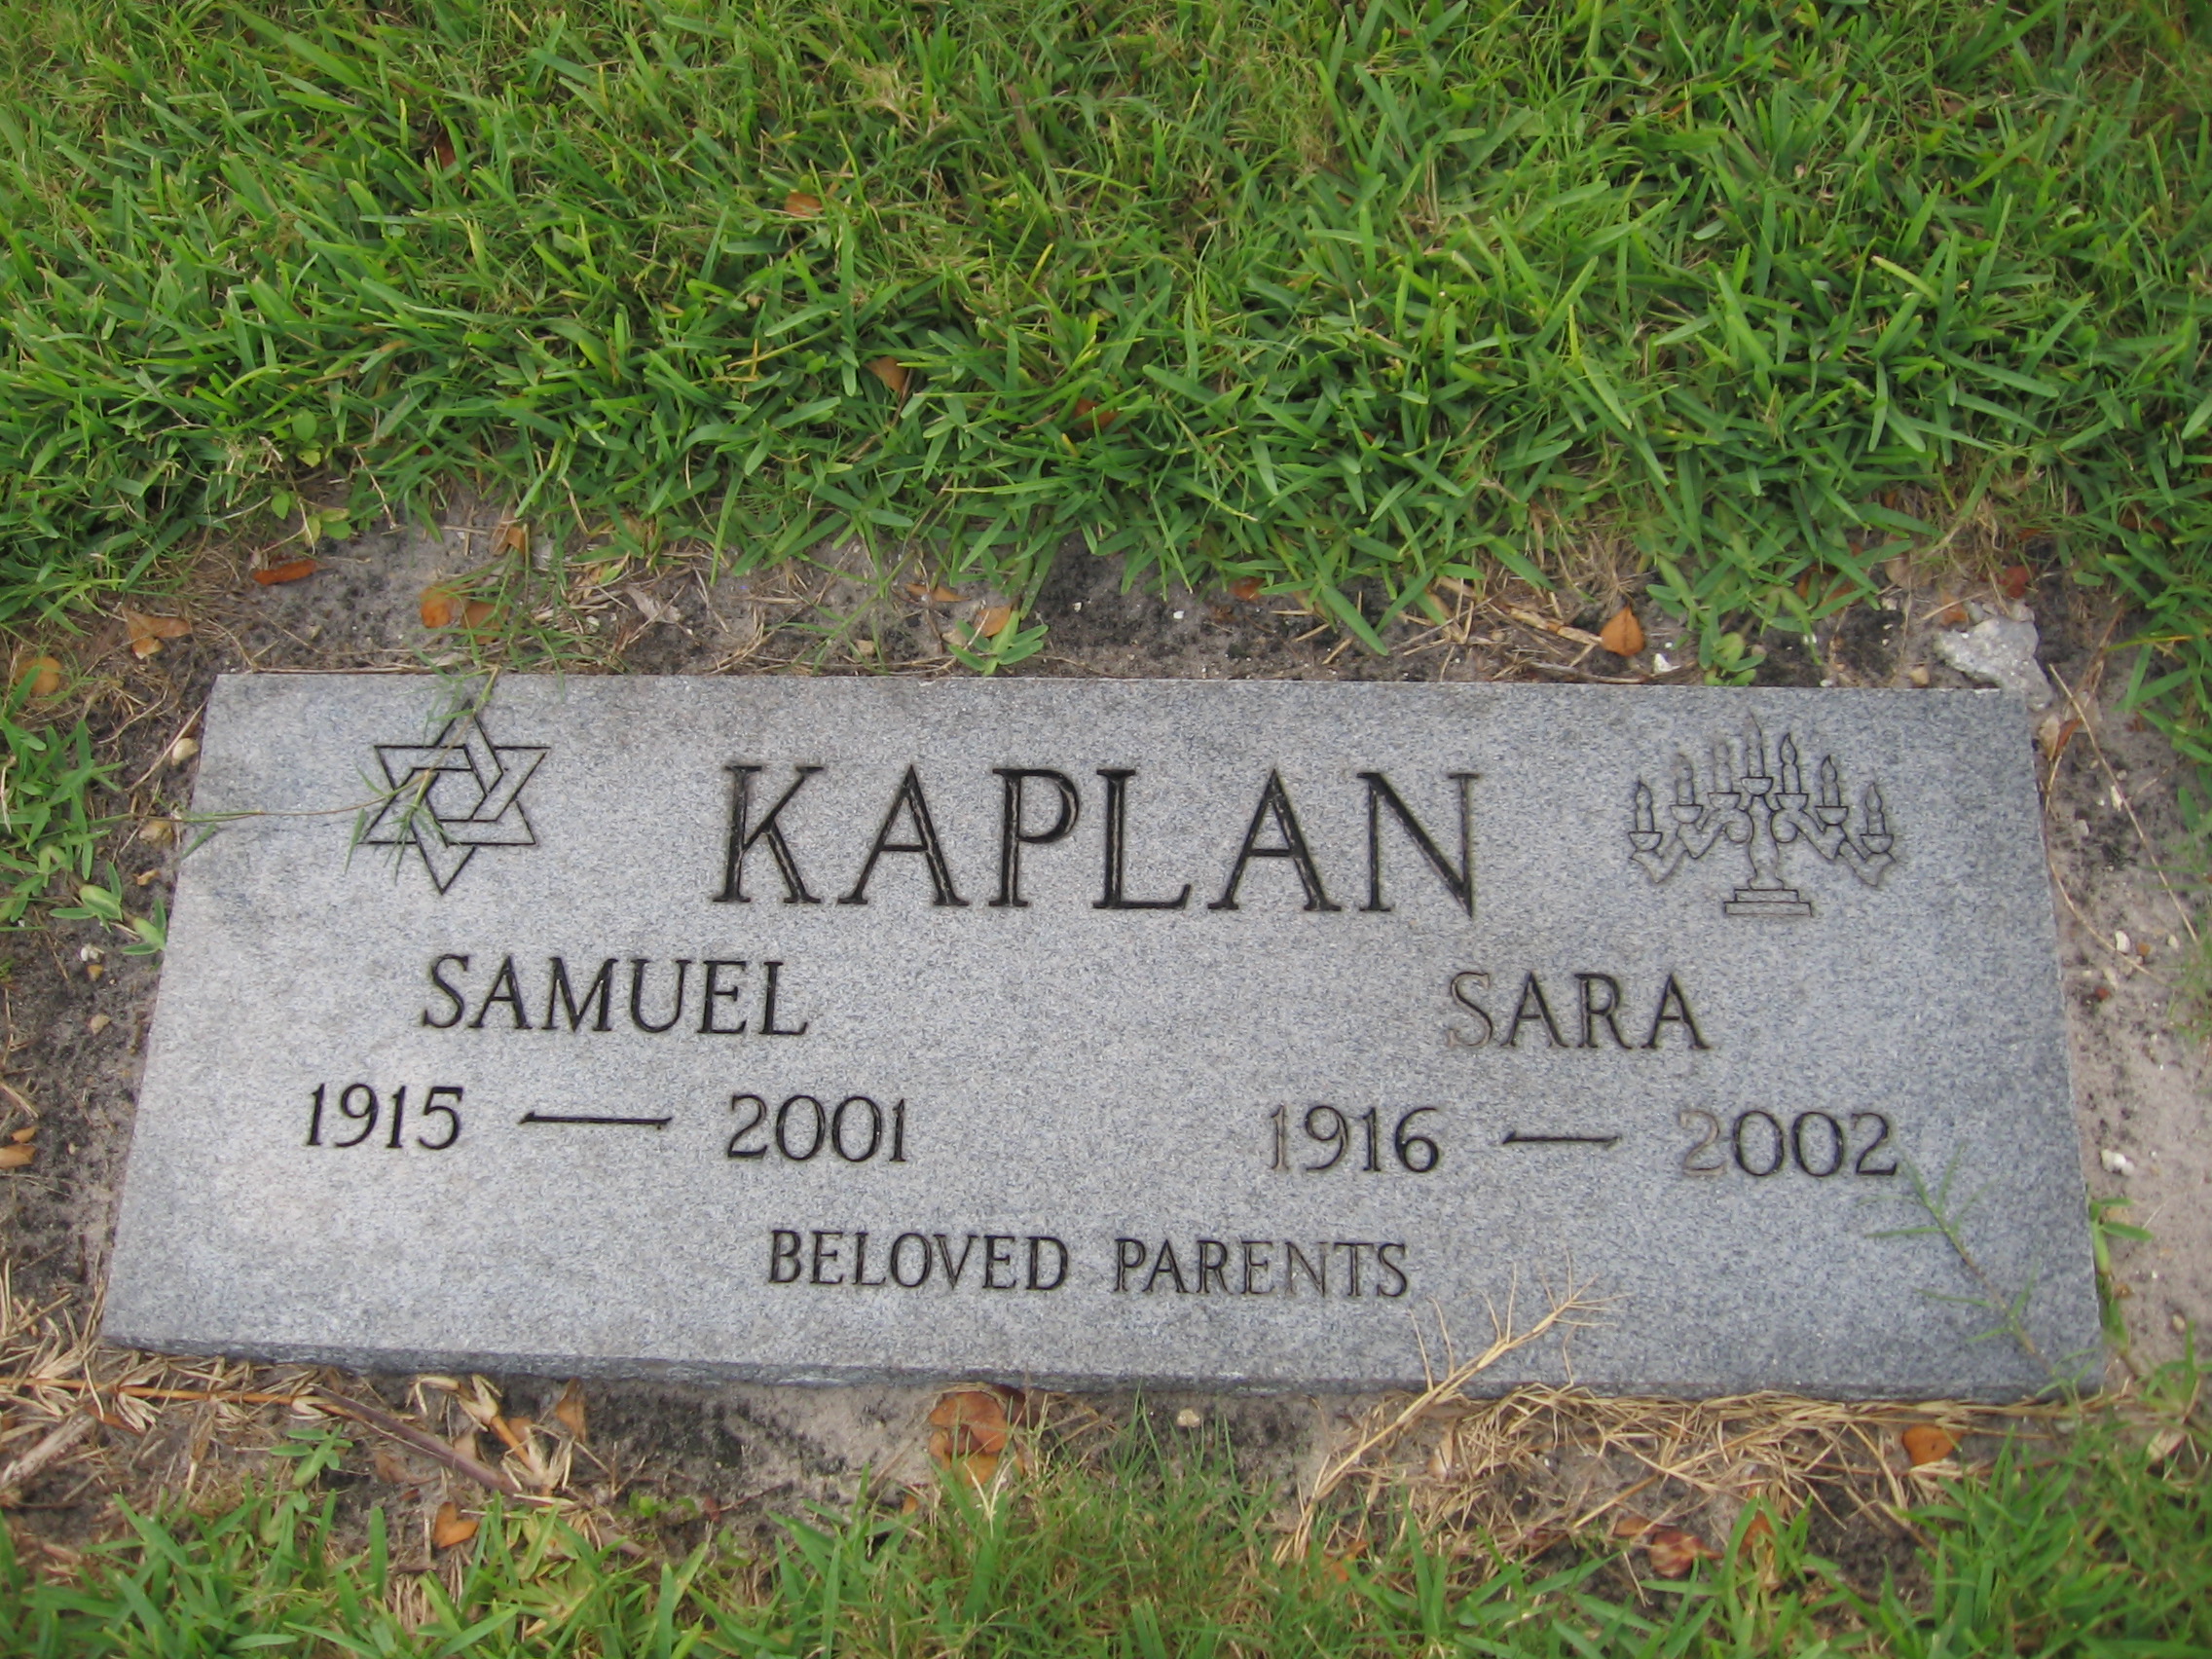 Samuel Kaplan